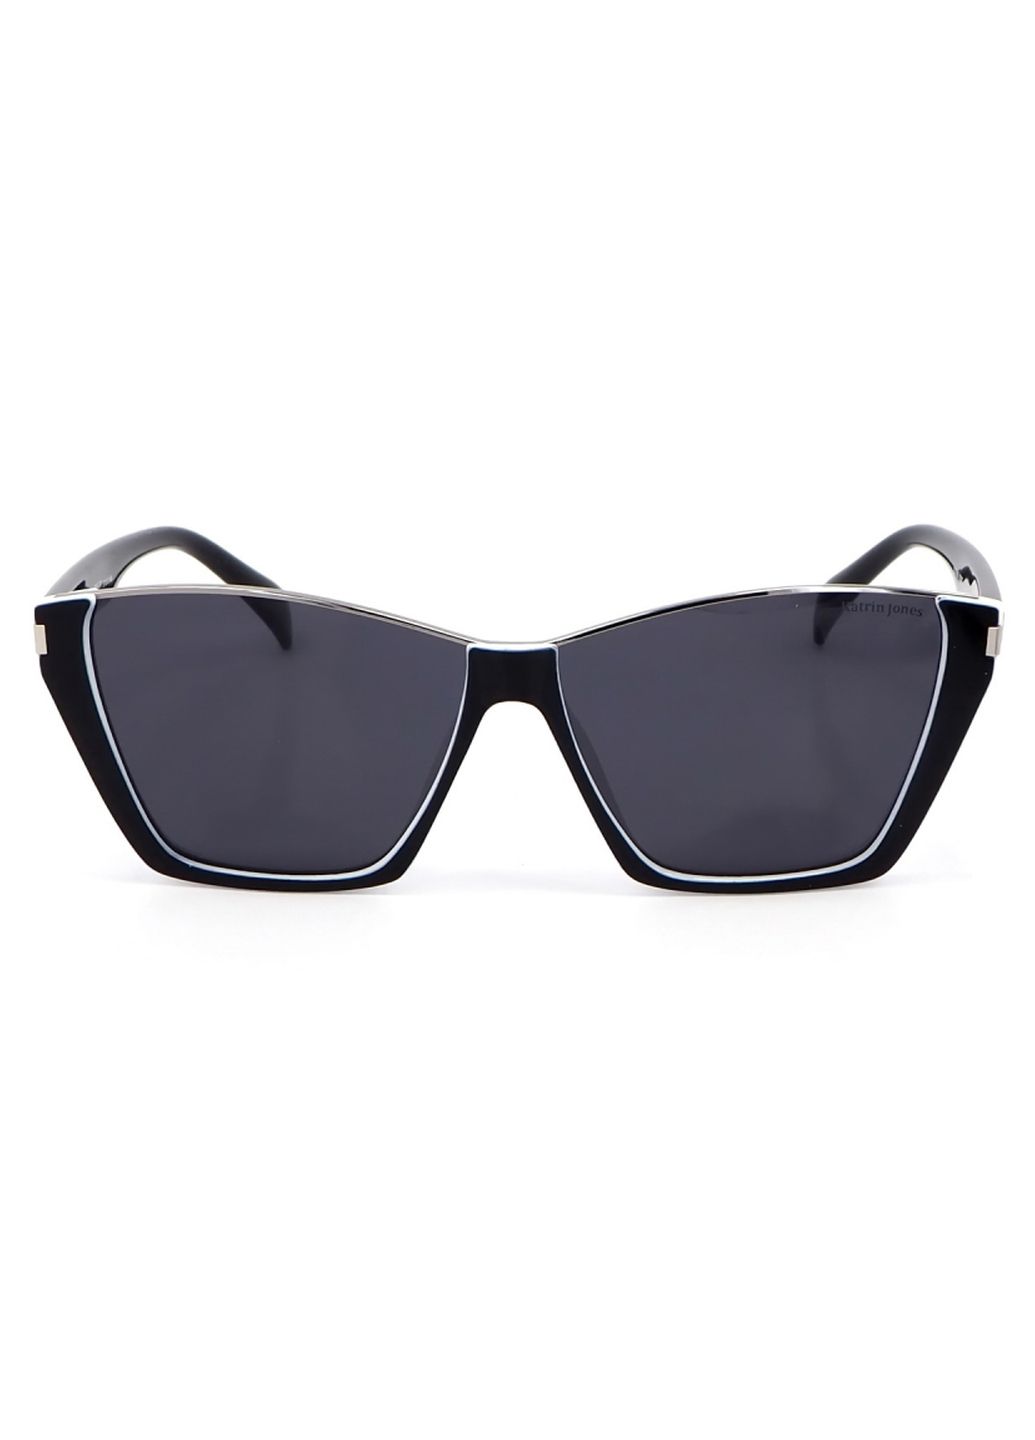 Купить Женские солнцезащитные очки Katrin Jones с поляризацией KJ0858 180038 - Черный в интернет-магазине